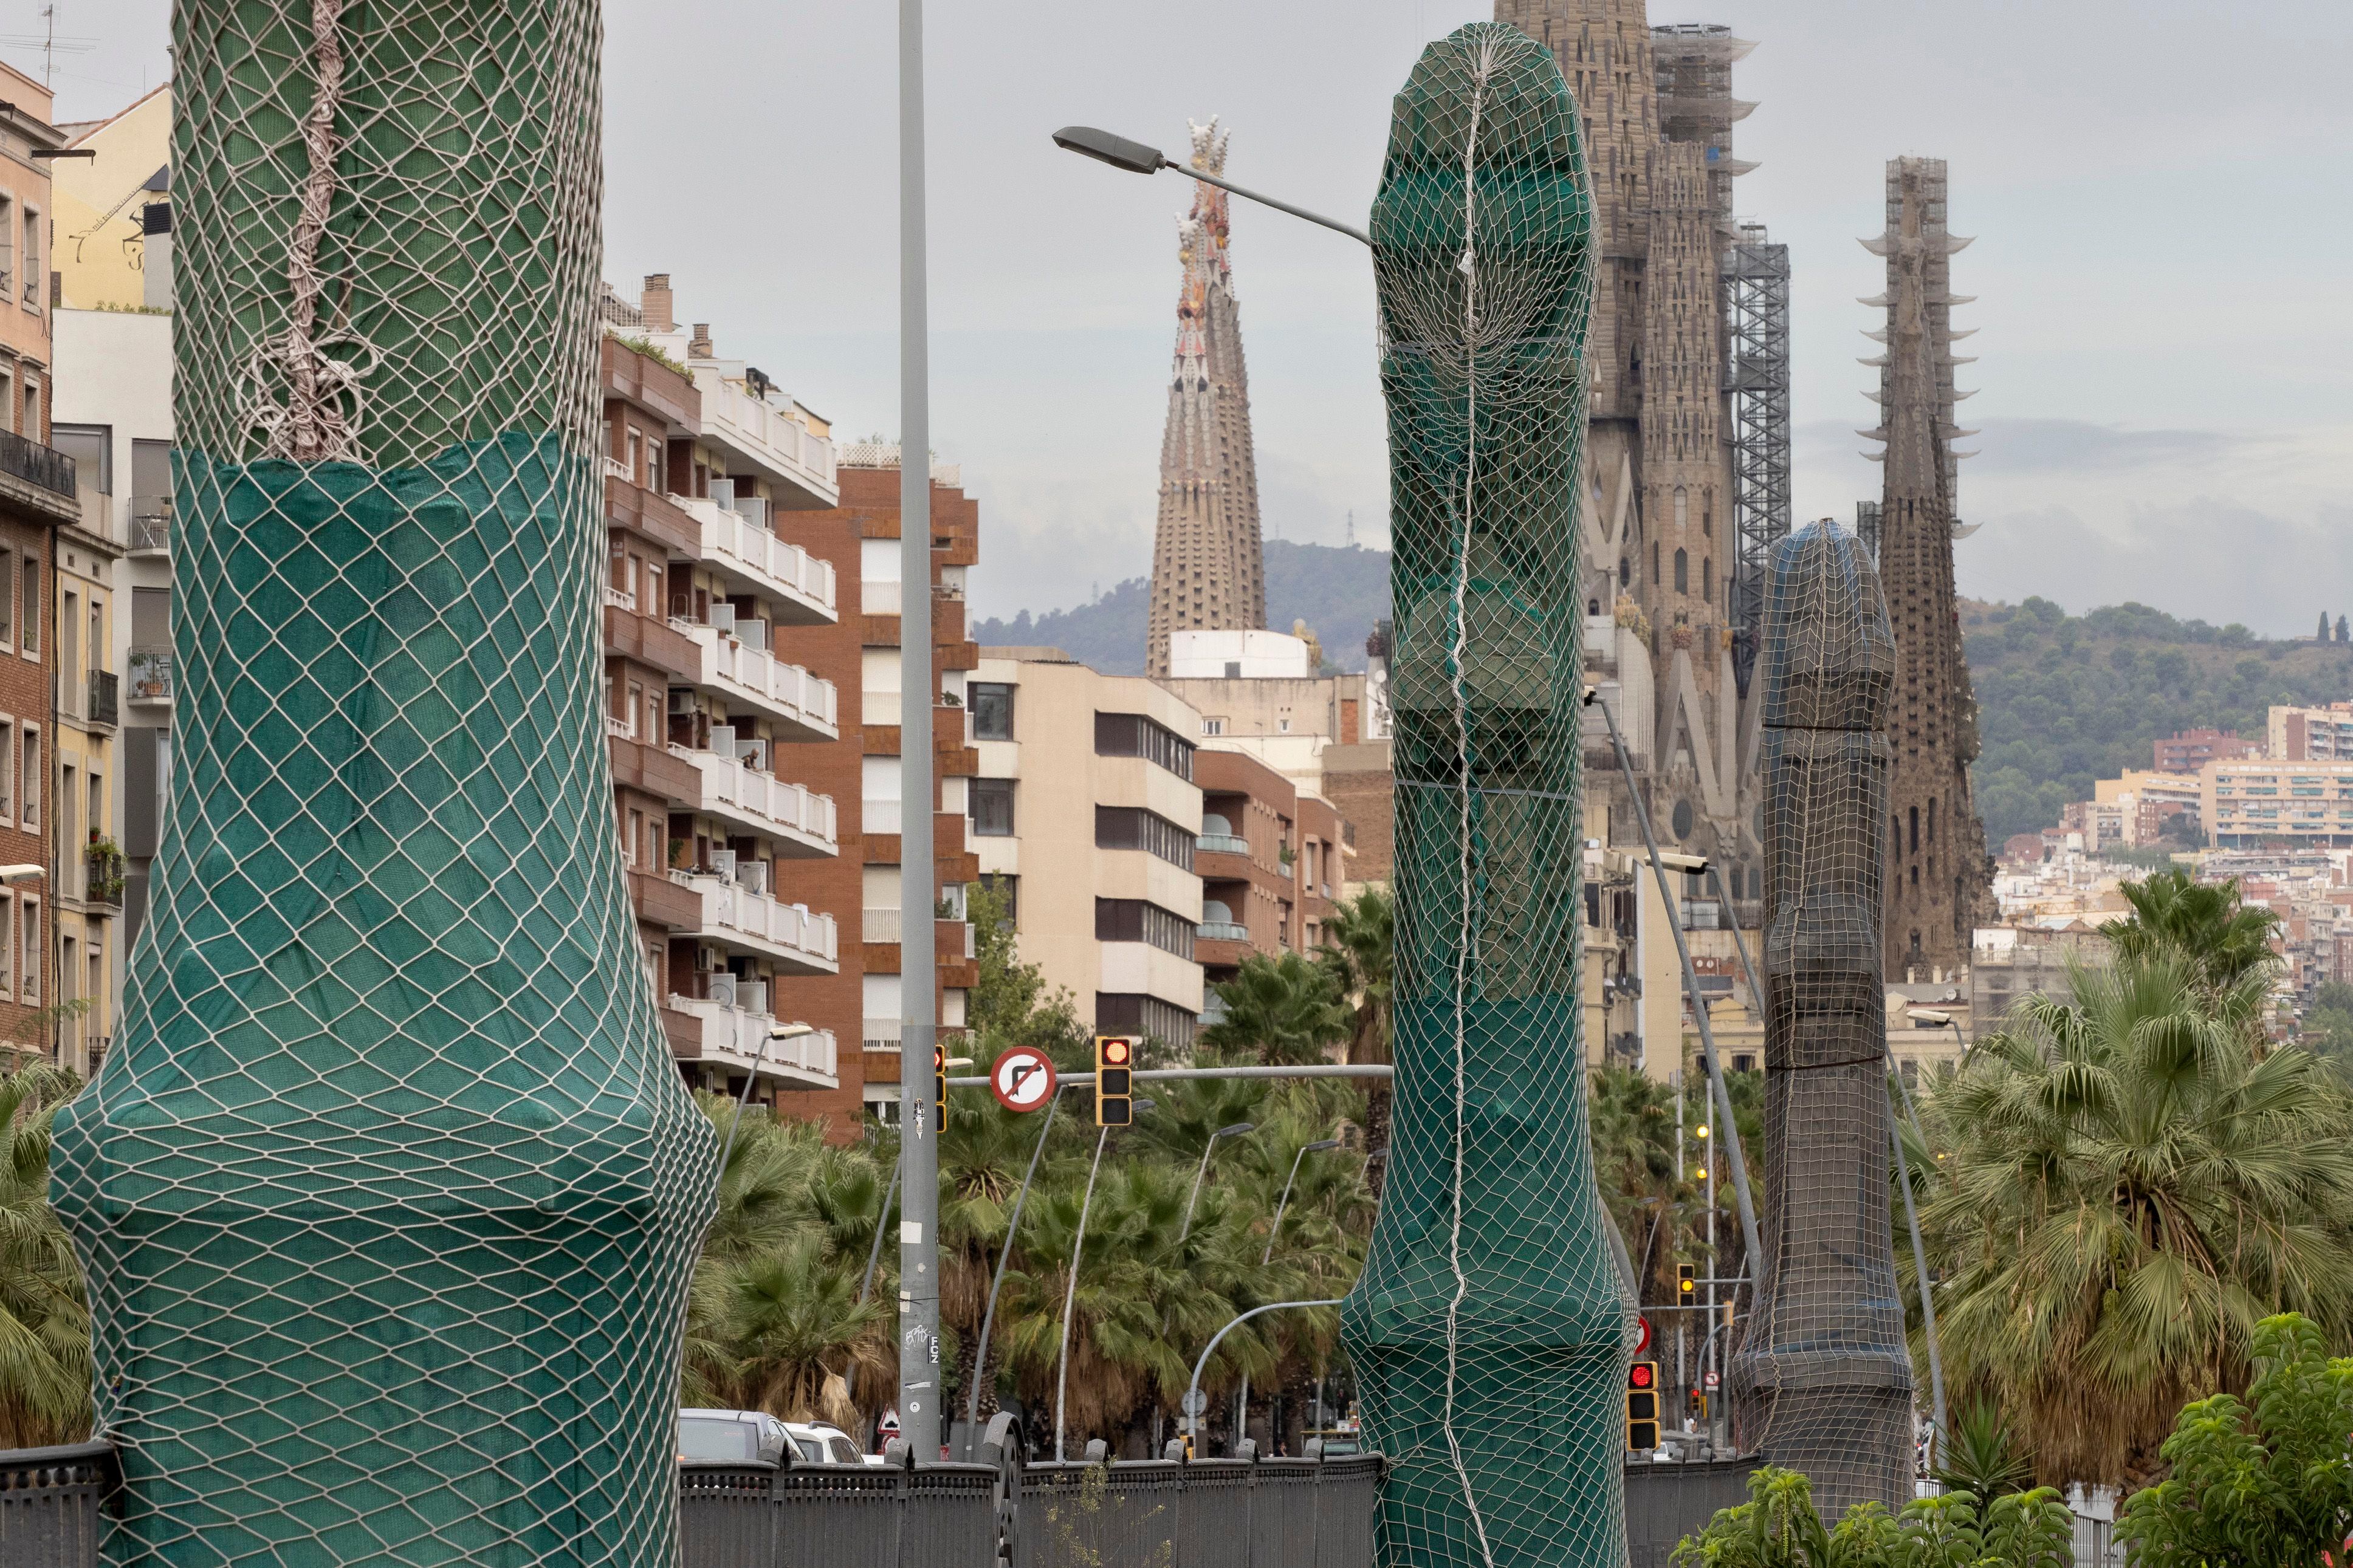 Farolas envueltas desde hace casi una década en el puente de Marina de Barcelona. 